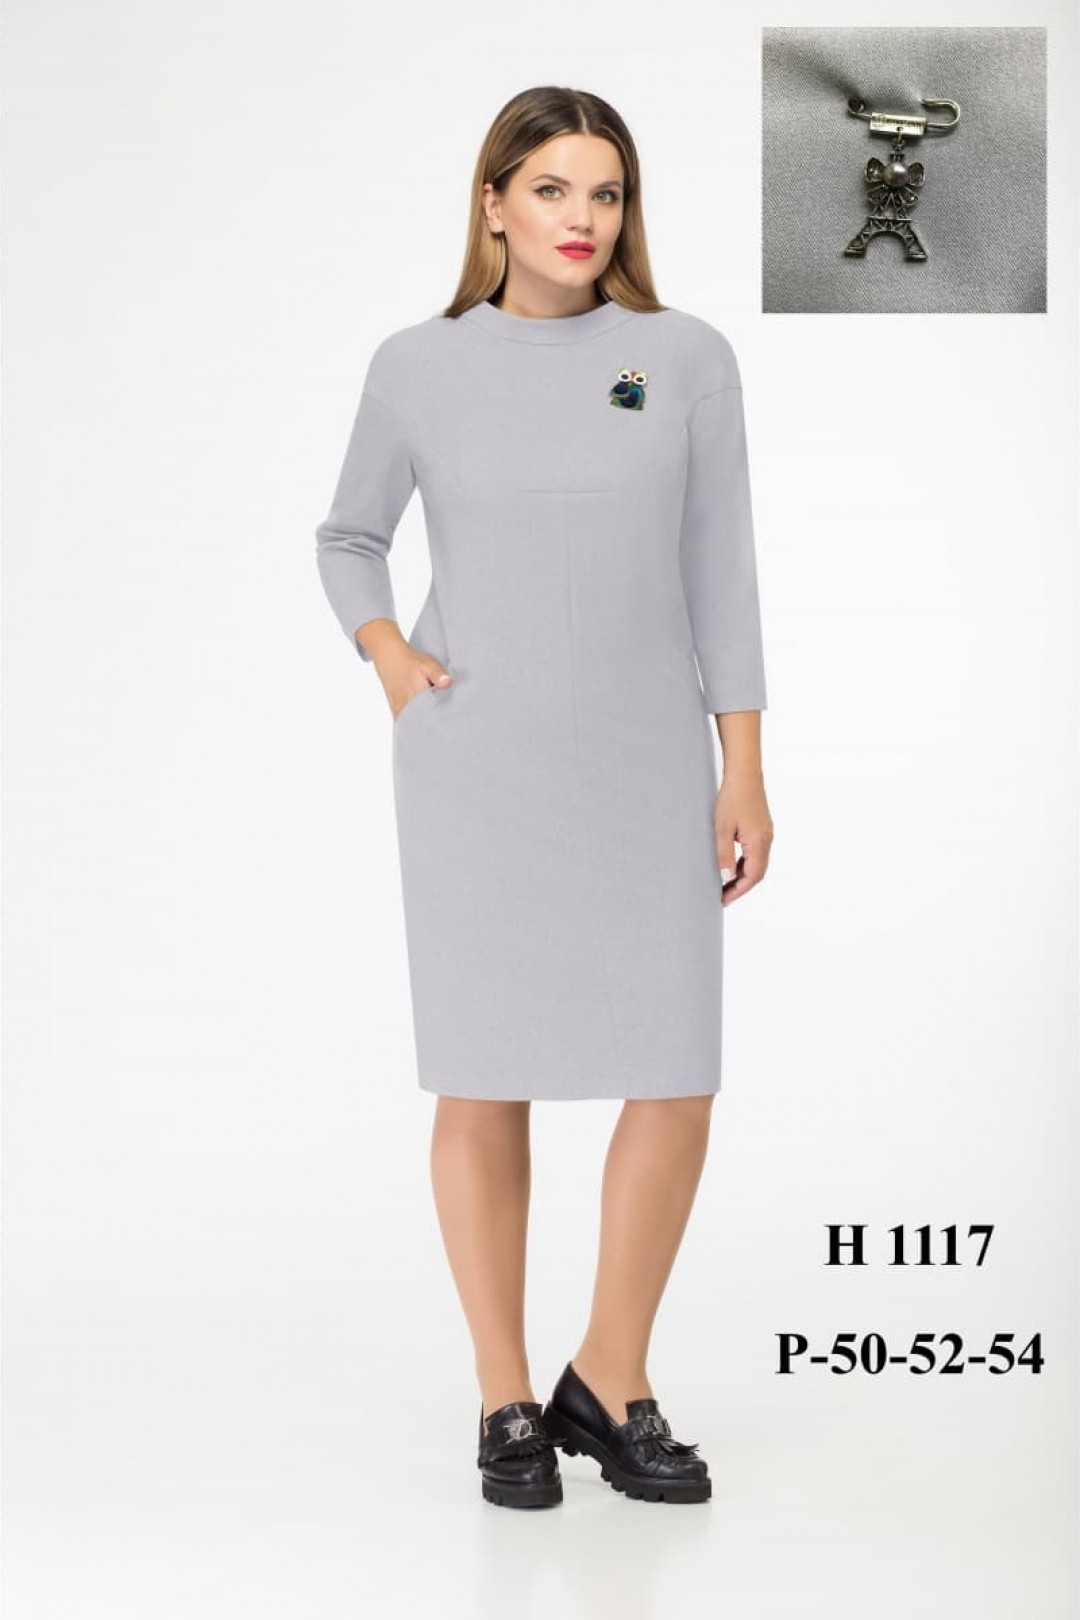 Платье Верита 1117-серый